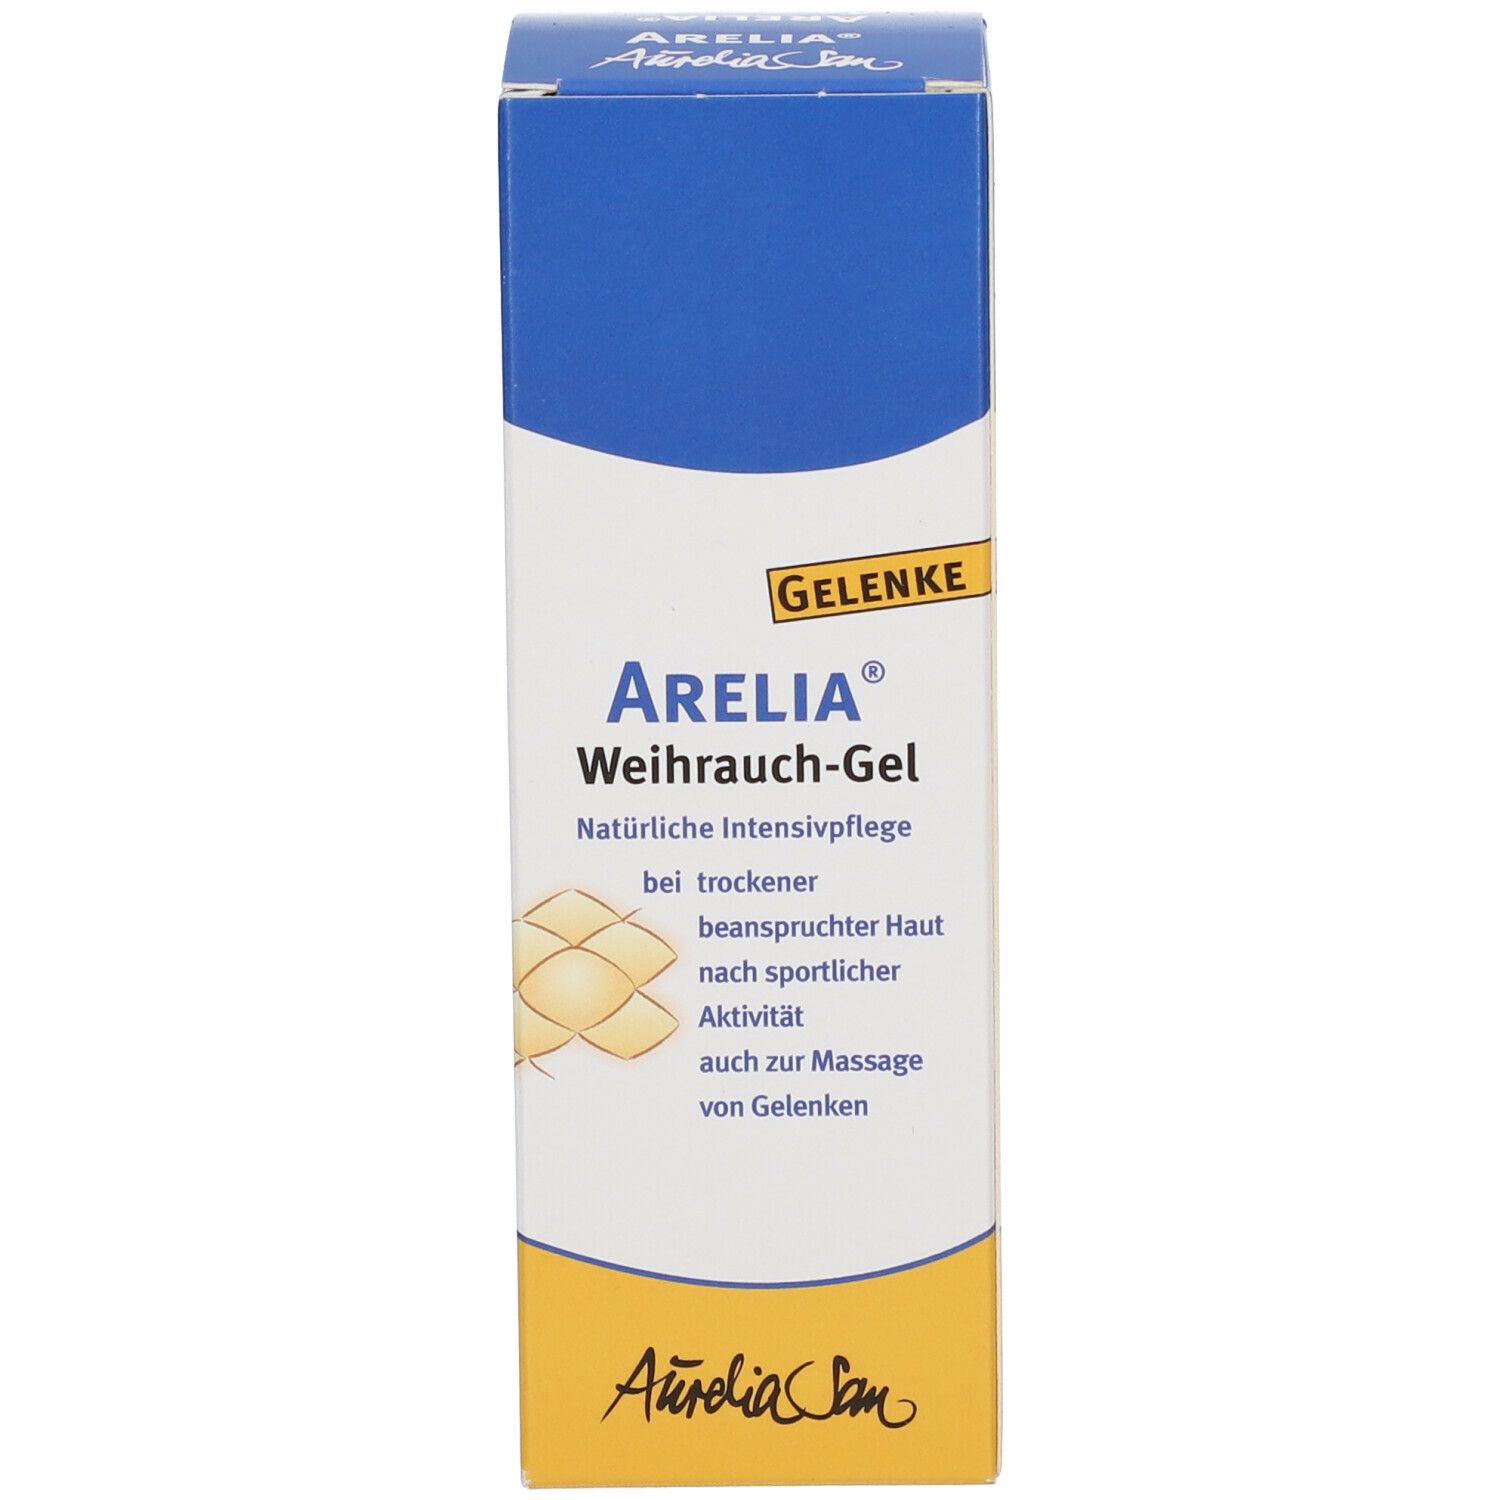 Arelia® Weihrauch-Gel